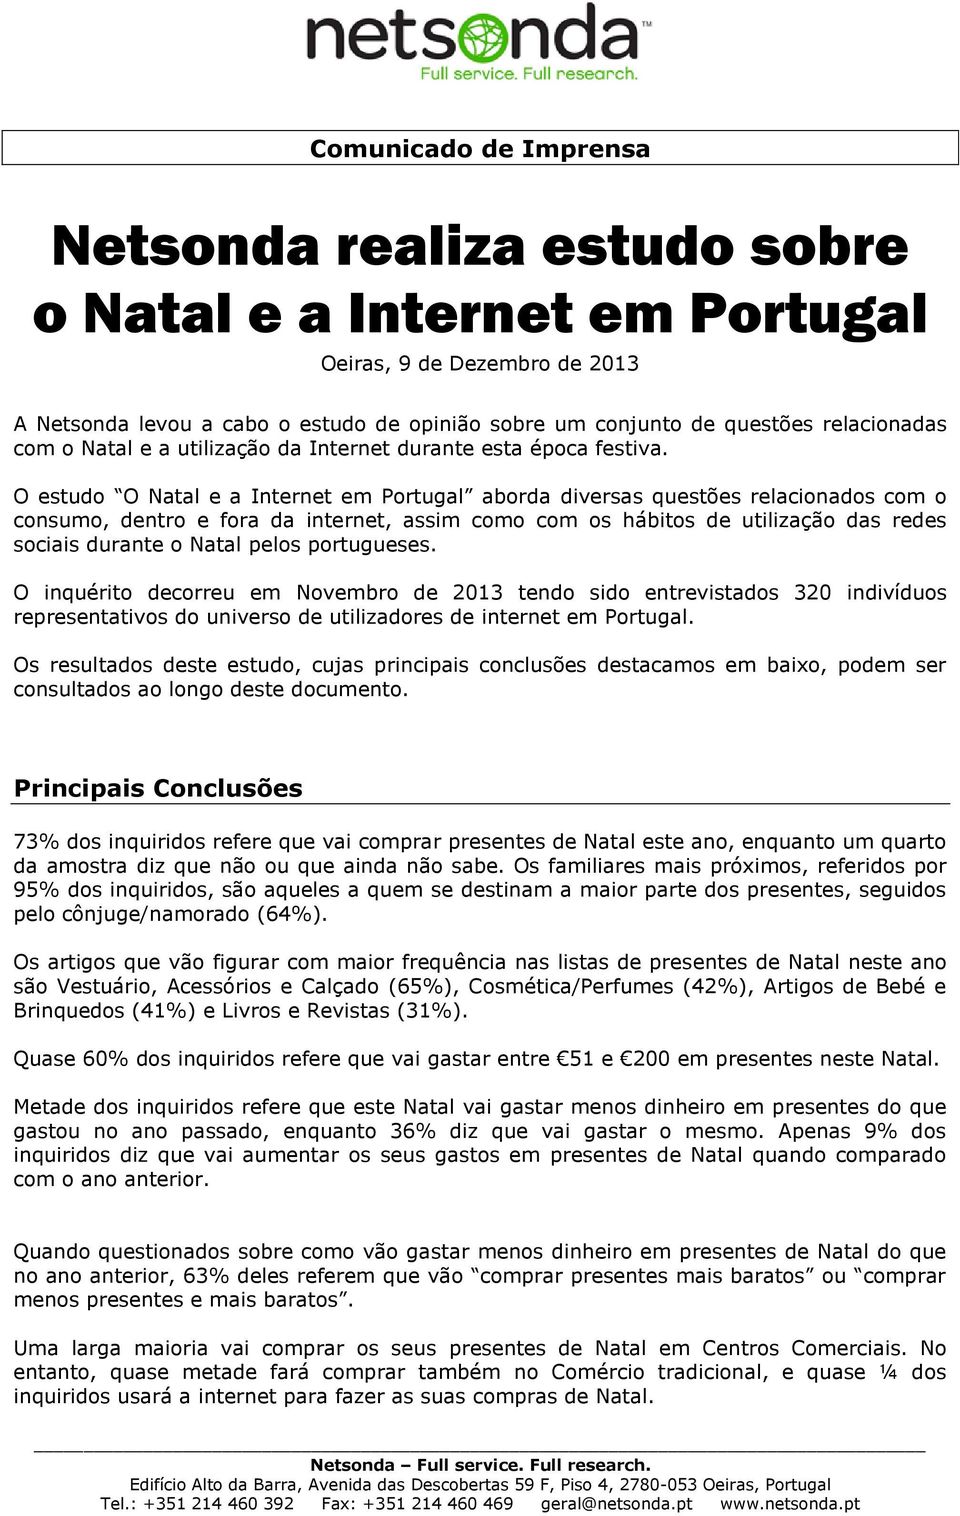 O estudo O Natal e a Internet em Portugal aborda diversas questões relacionados com o consumo, dentro e fora da internet, assim como com os hábitos de utilização das redes sociais durante o Natal